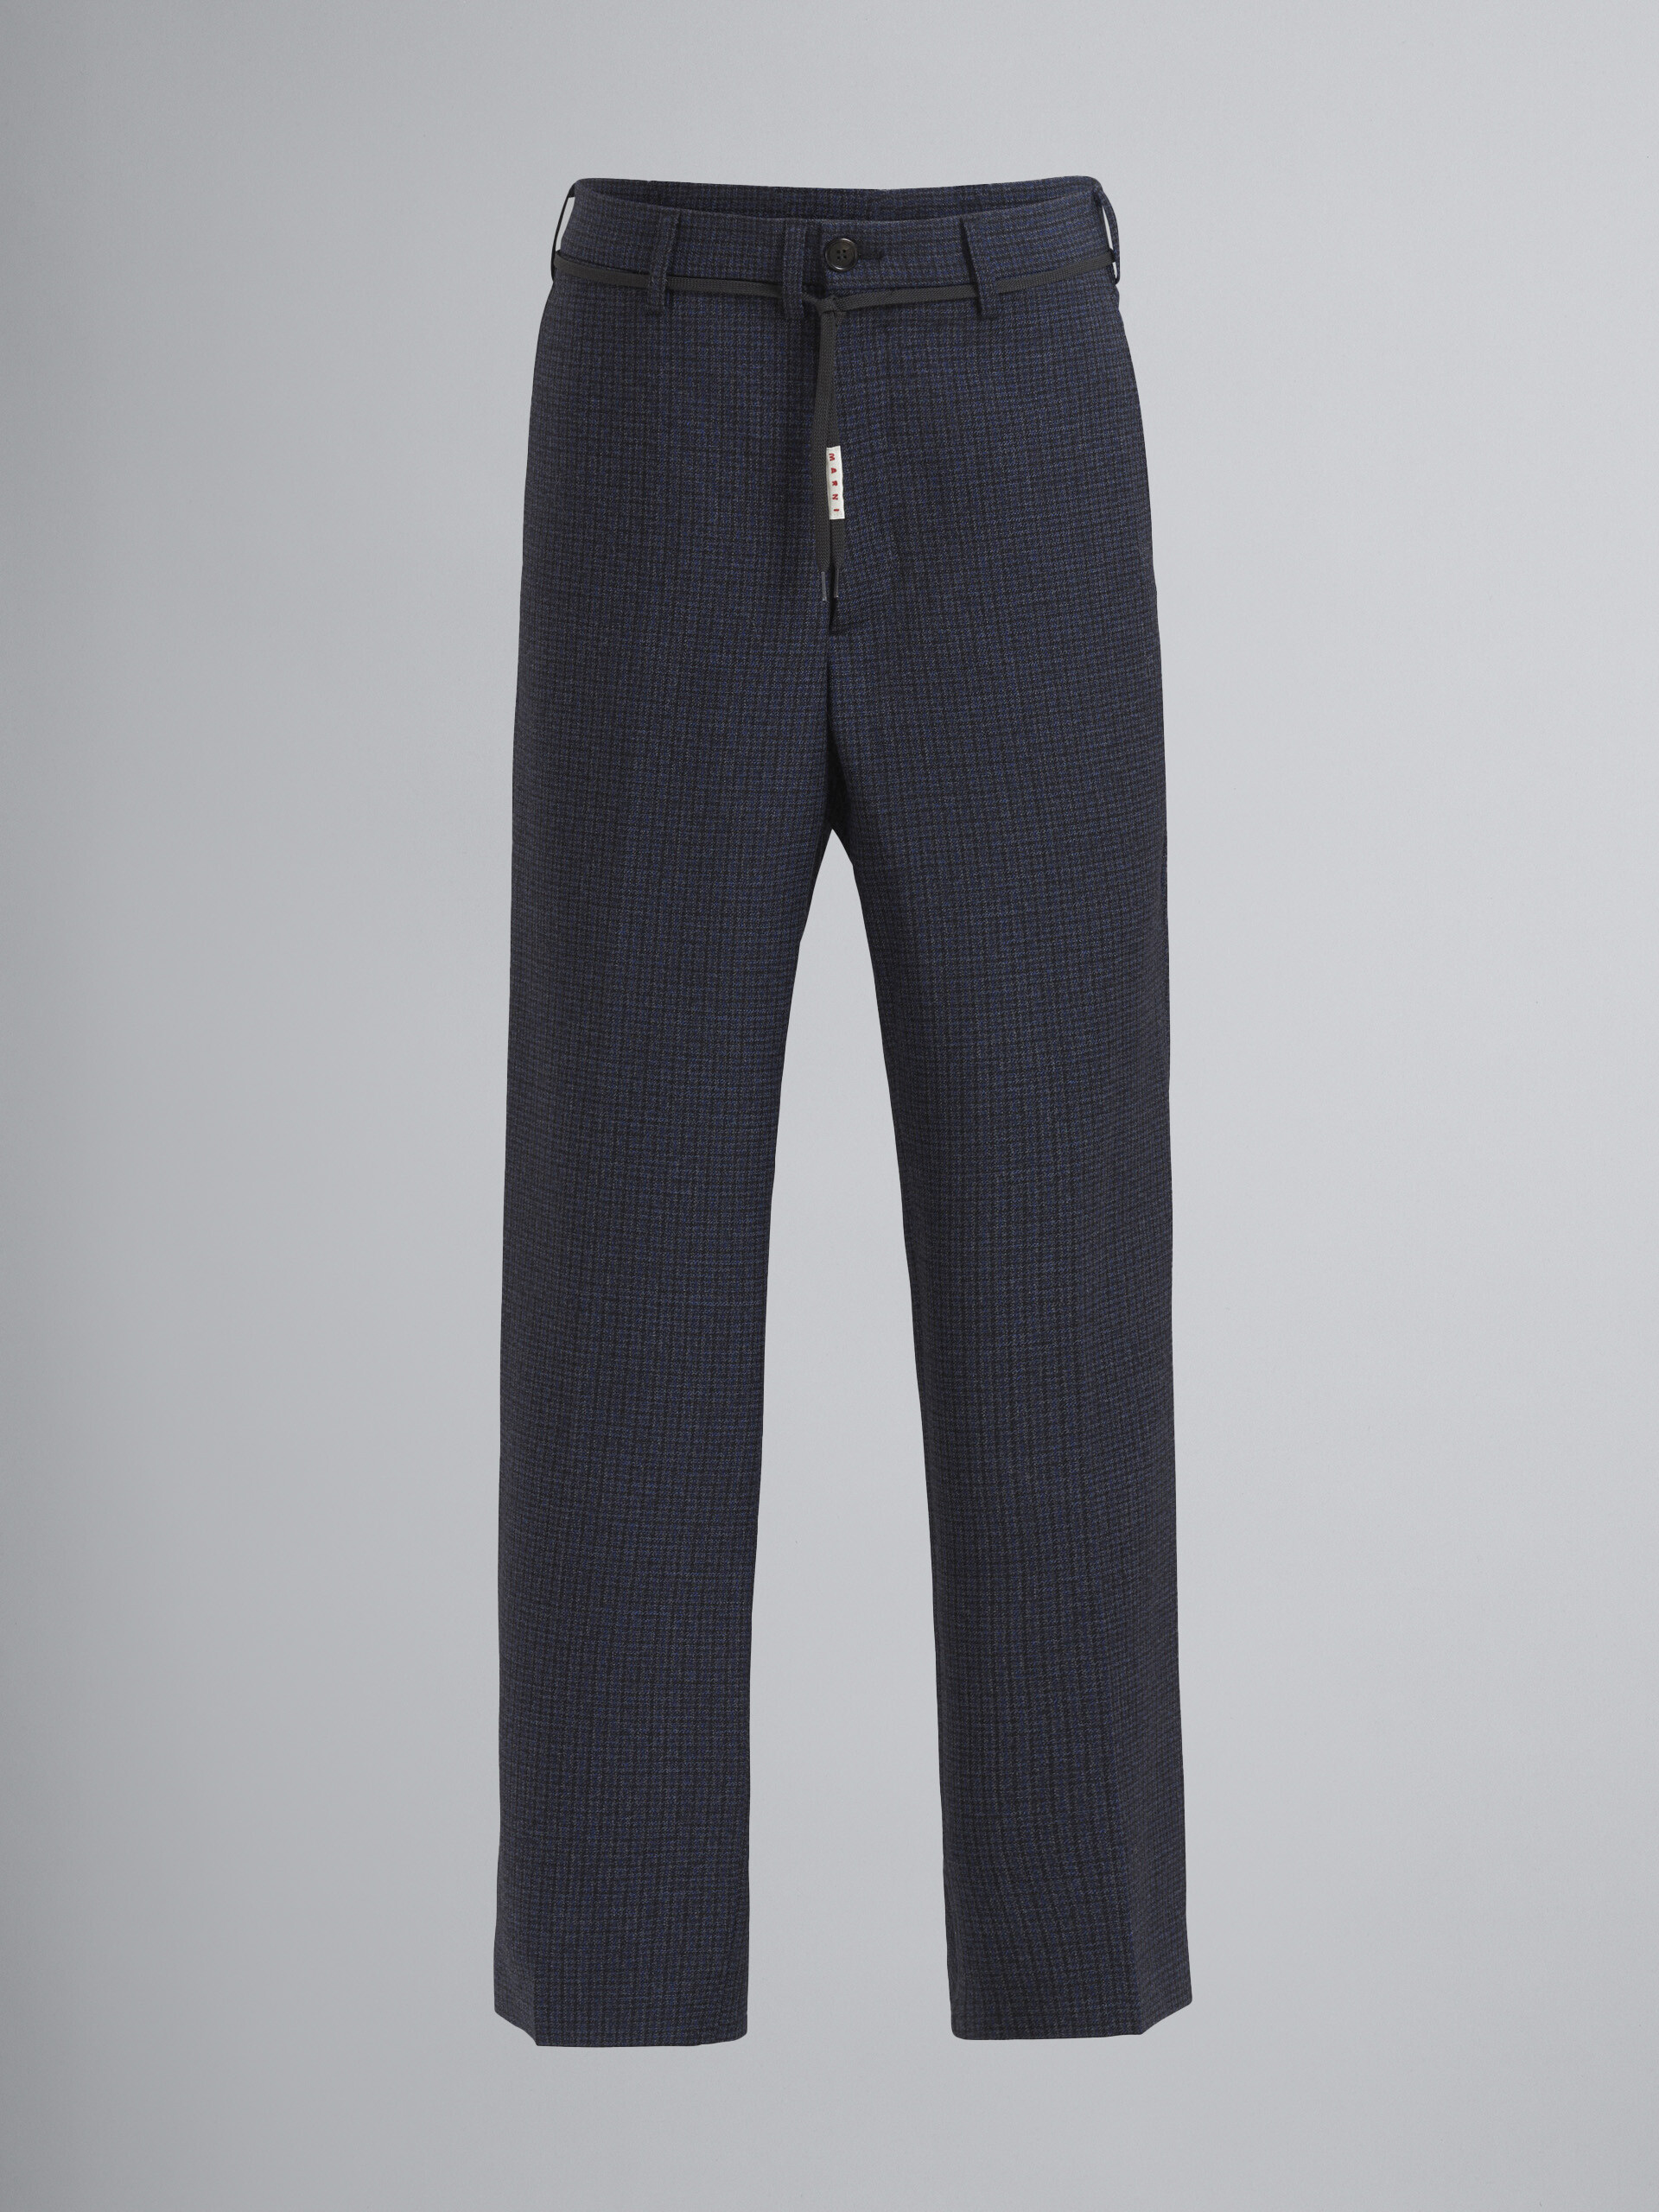 Pantaloni in lana check con motivo pied de poule - Pantaloni - Image 1